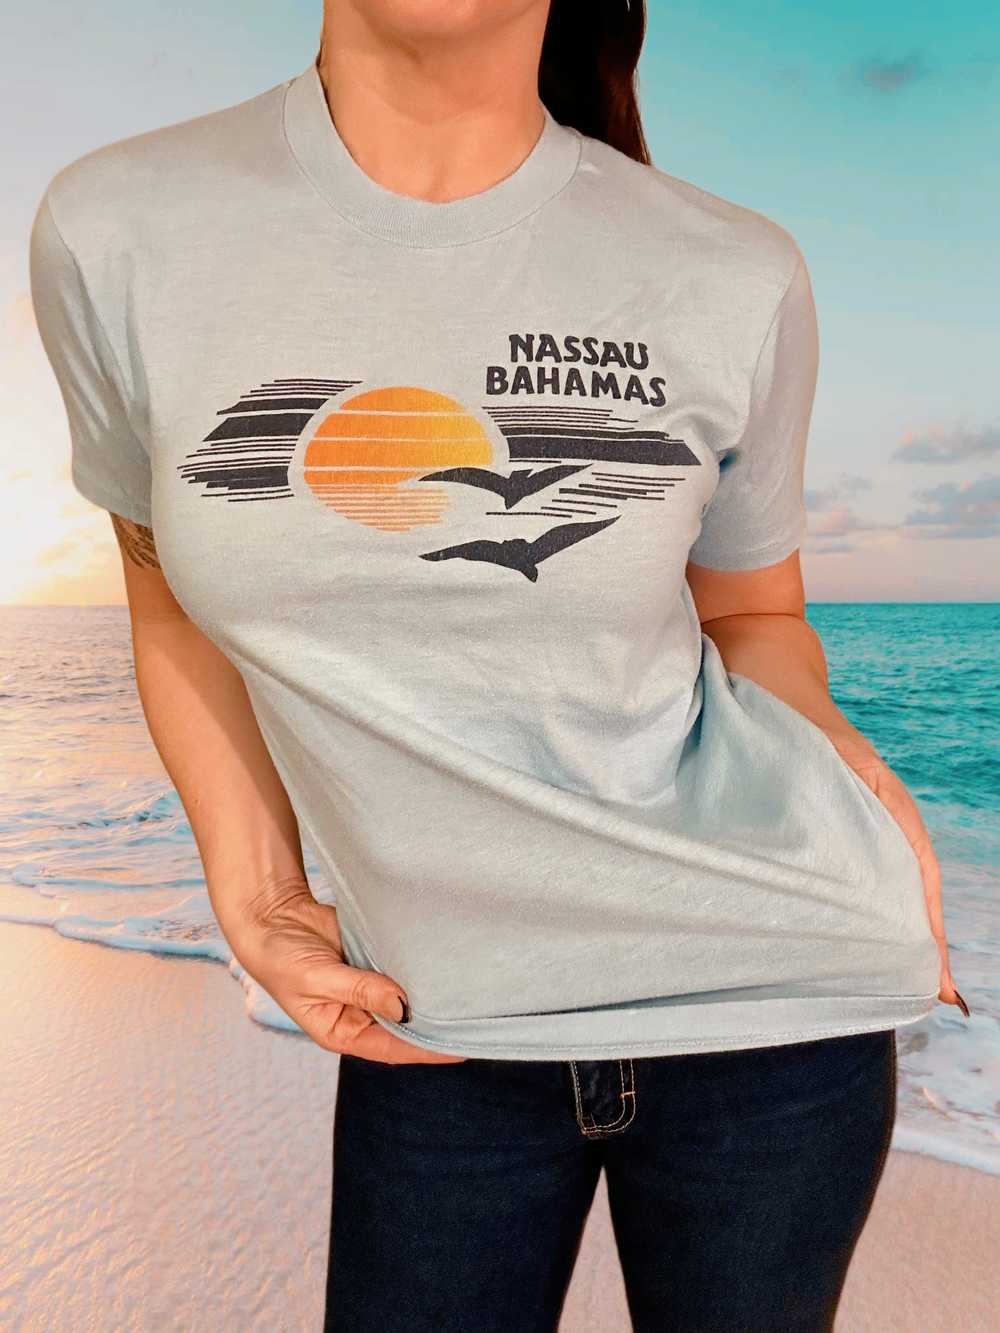 Nassau Bahamas T-shirt - image 1